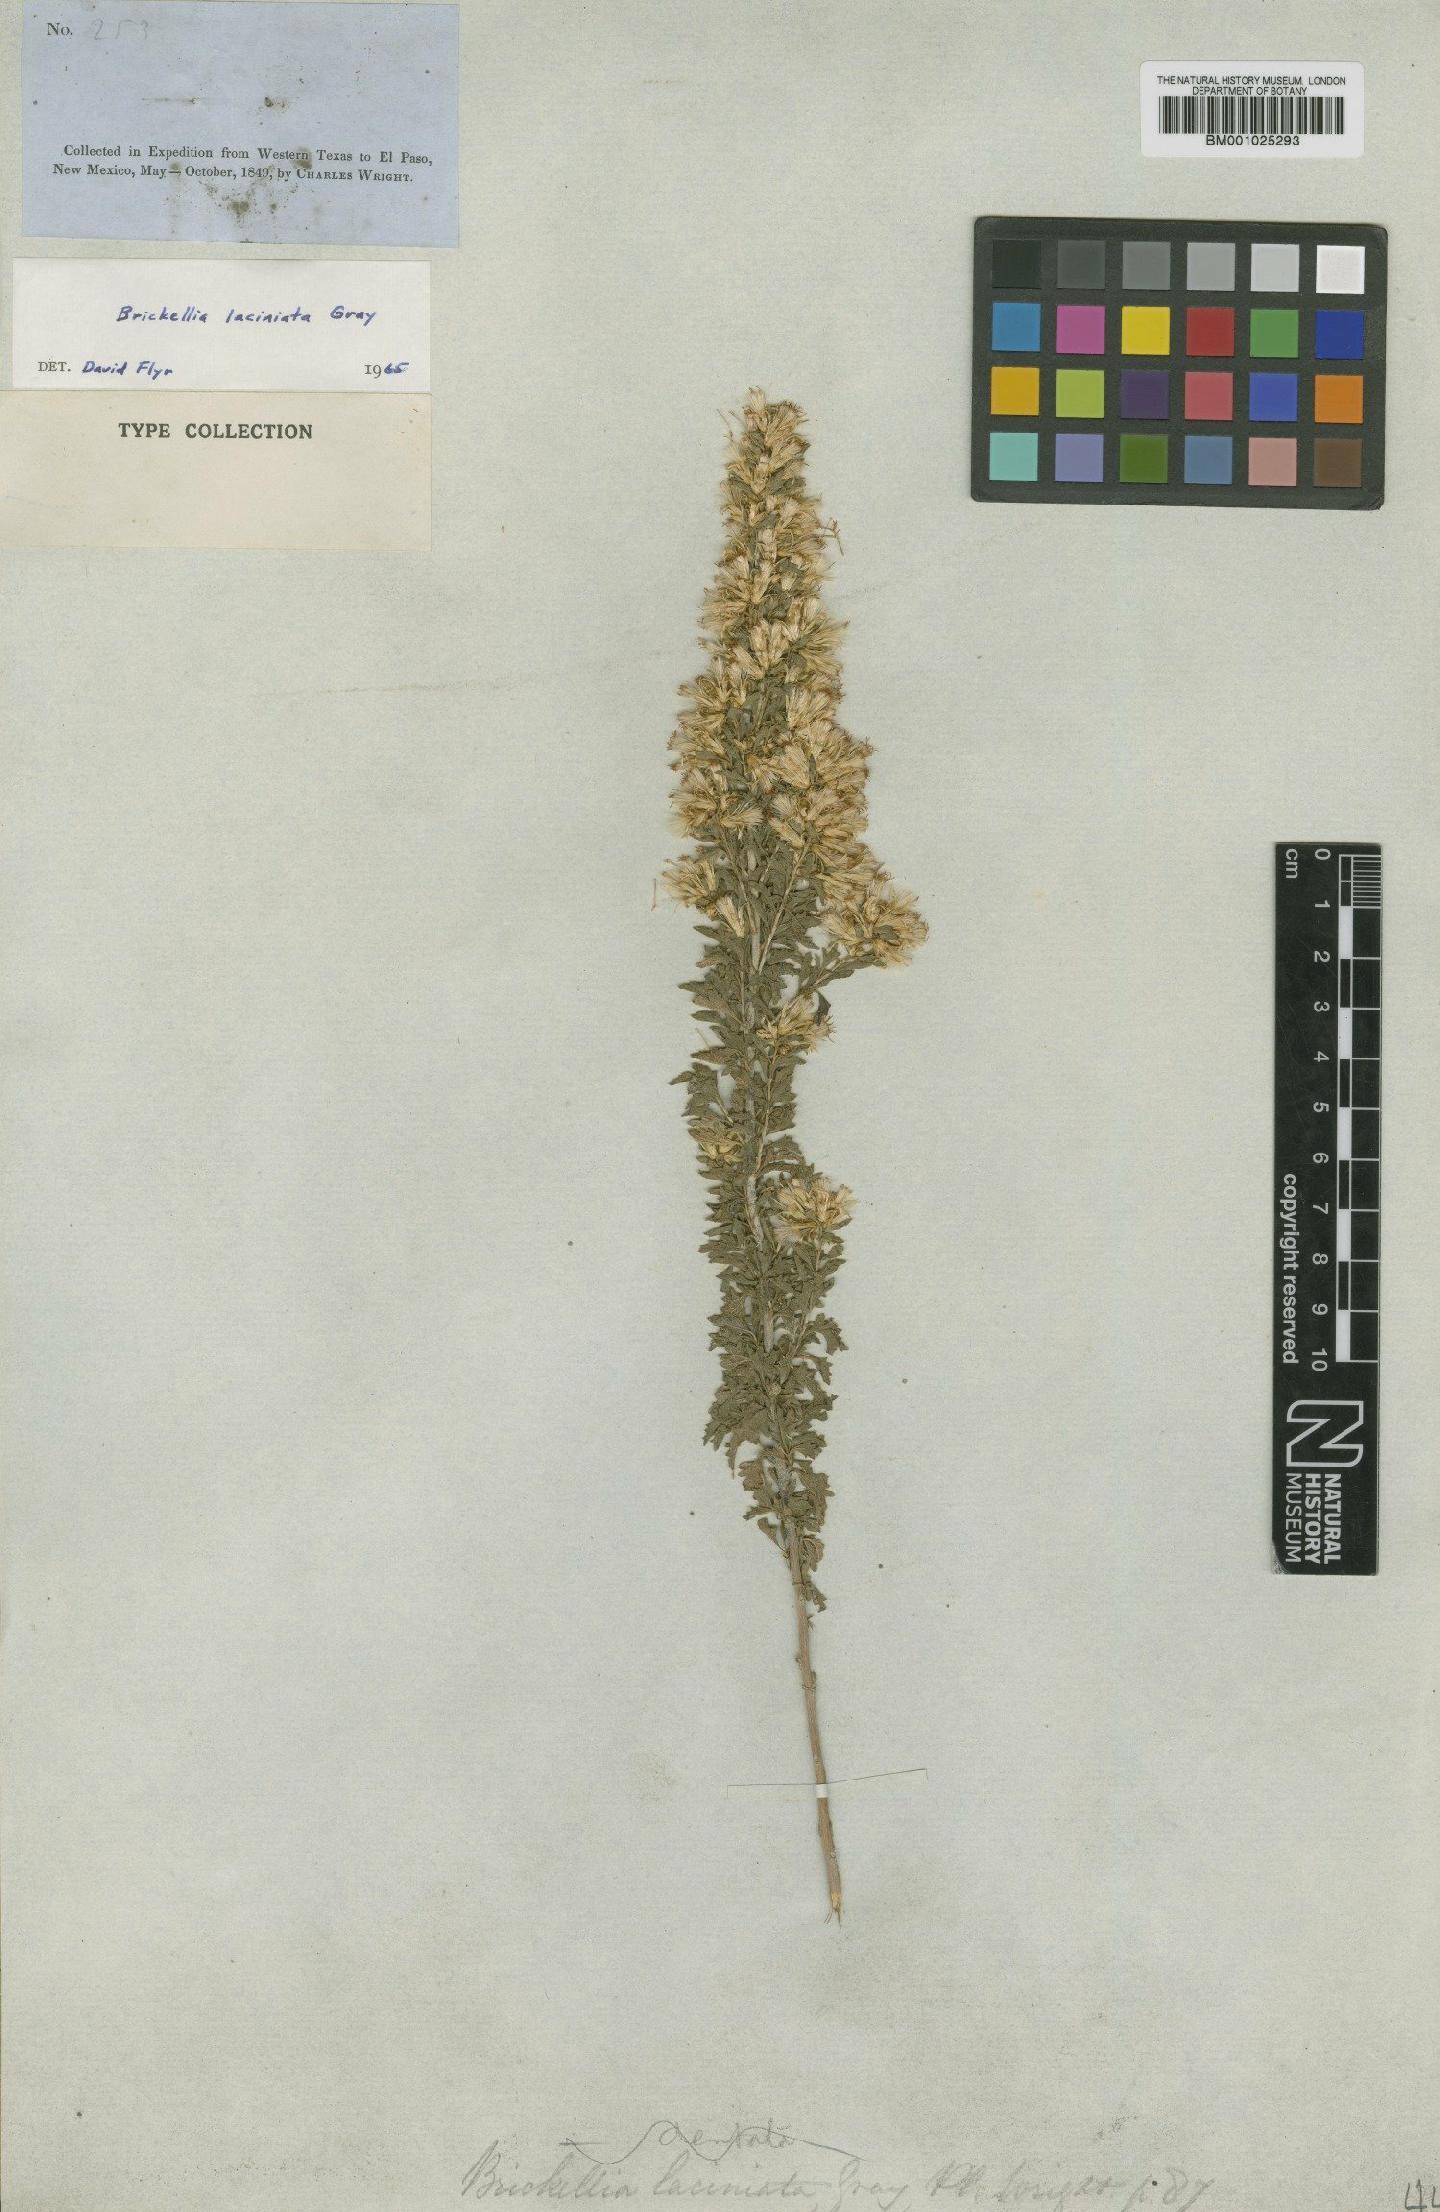 To NHMUK collection (Brickellia laciniata A.Gray; Type; NHMUK:ecatalogue:745578)